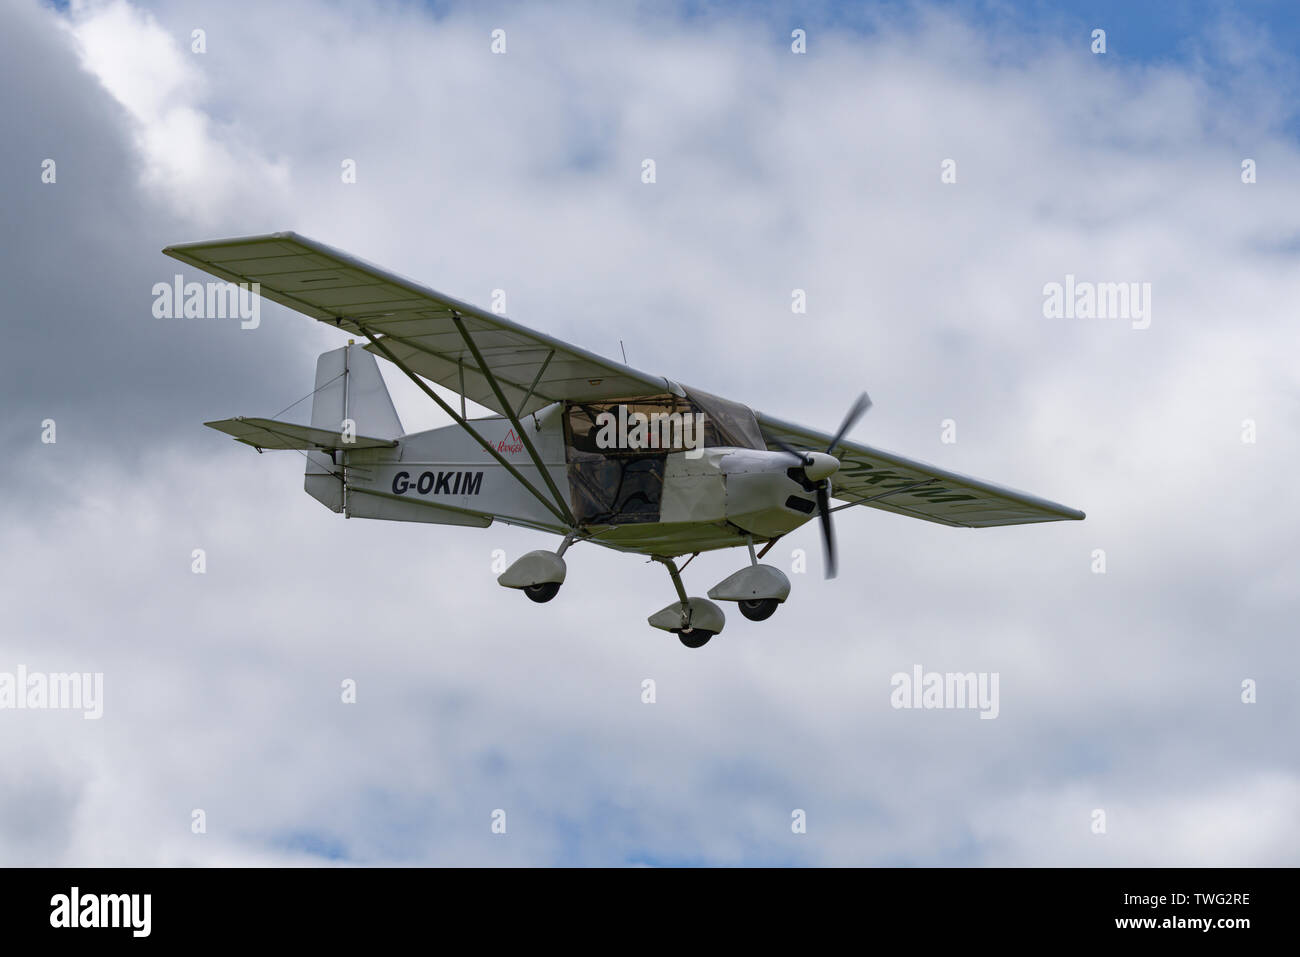 G-OKIM sport ulm Skyranger un avion en approche finale pour l'atterrissage à l'Aérodrome de Popham près de Basingstoke, Hampshire Banque D'Images